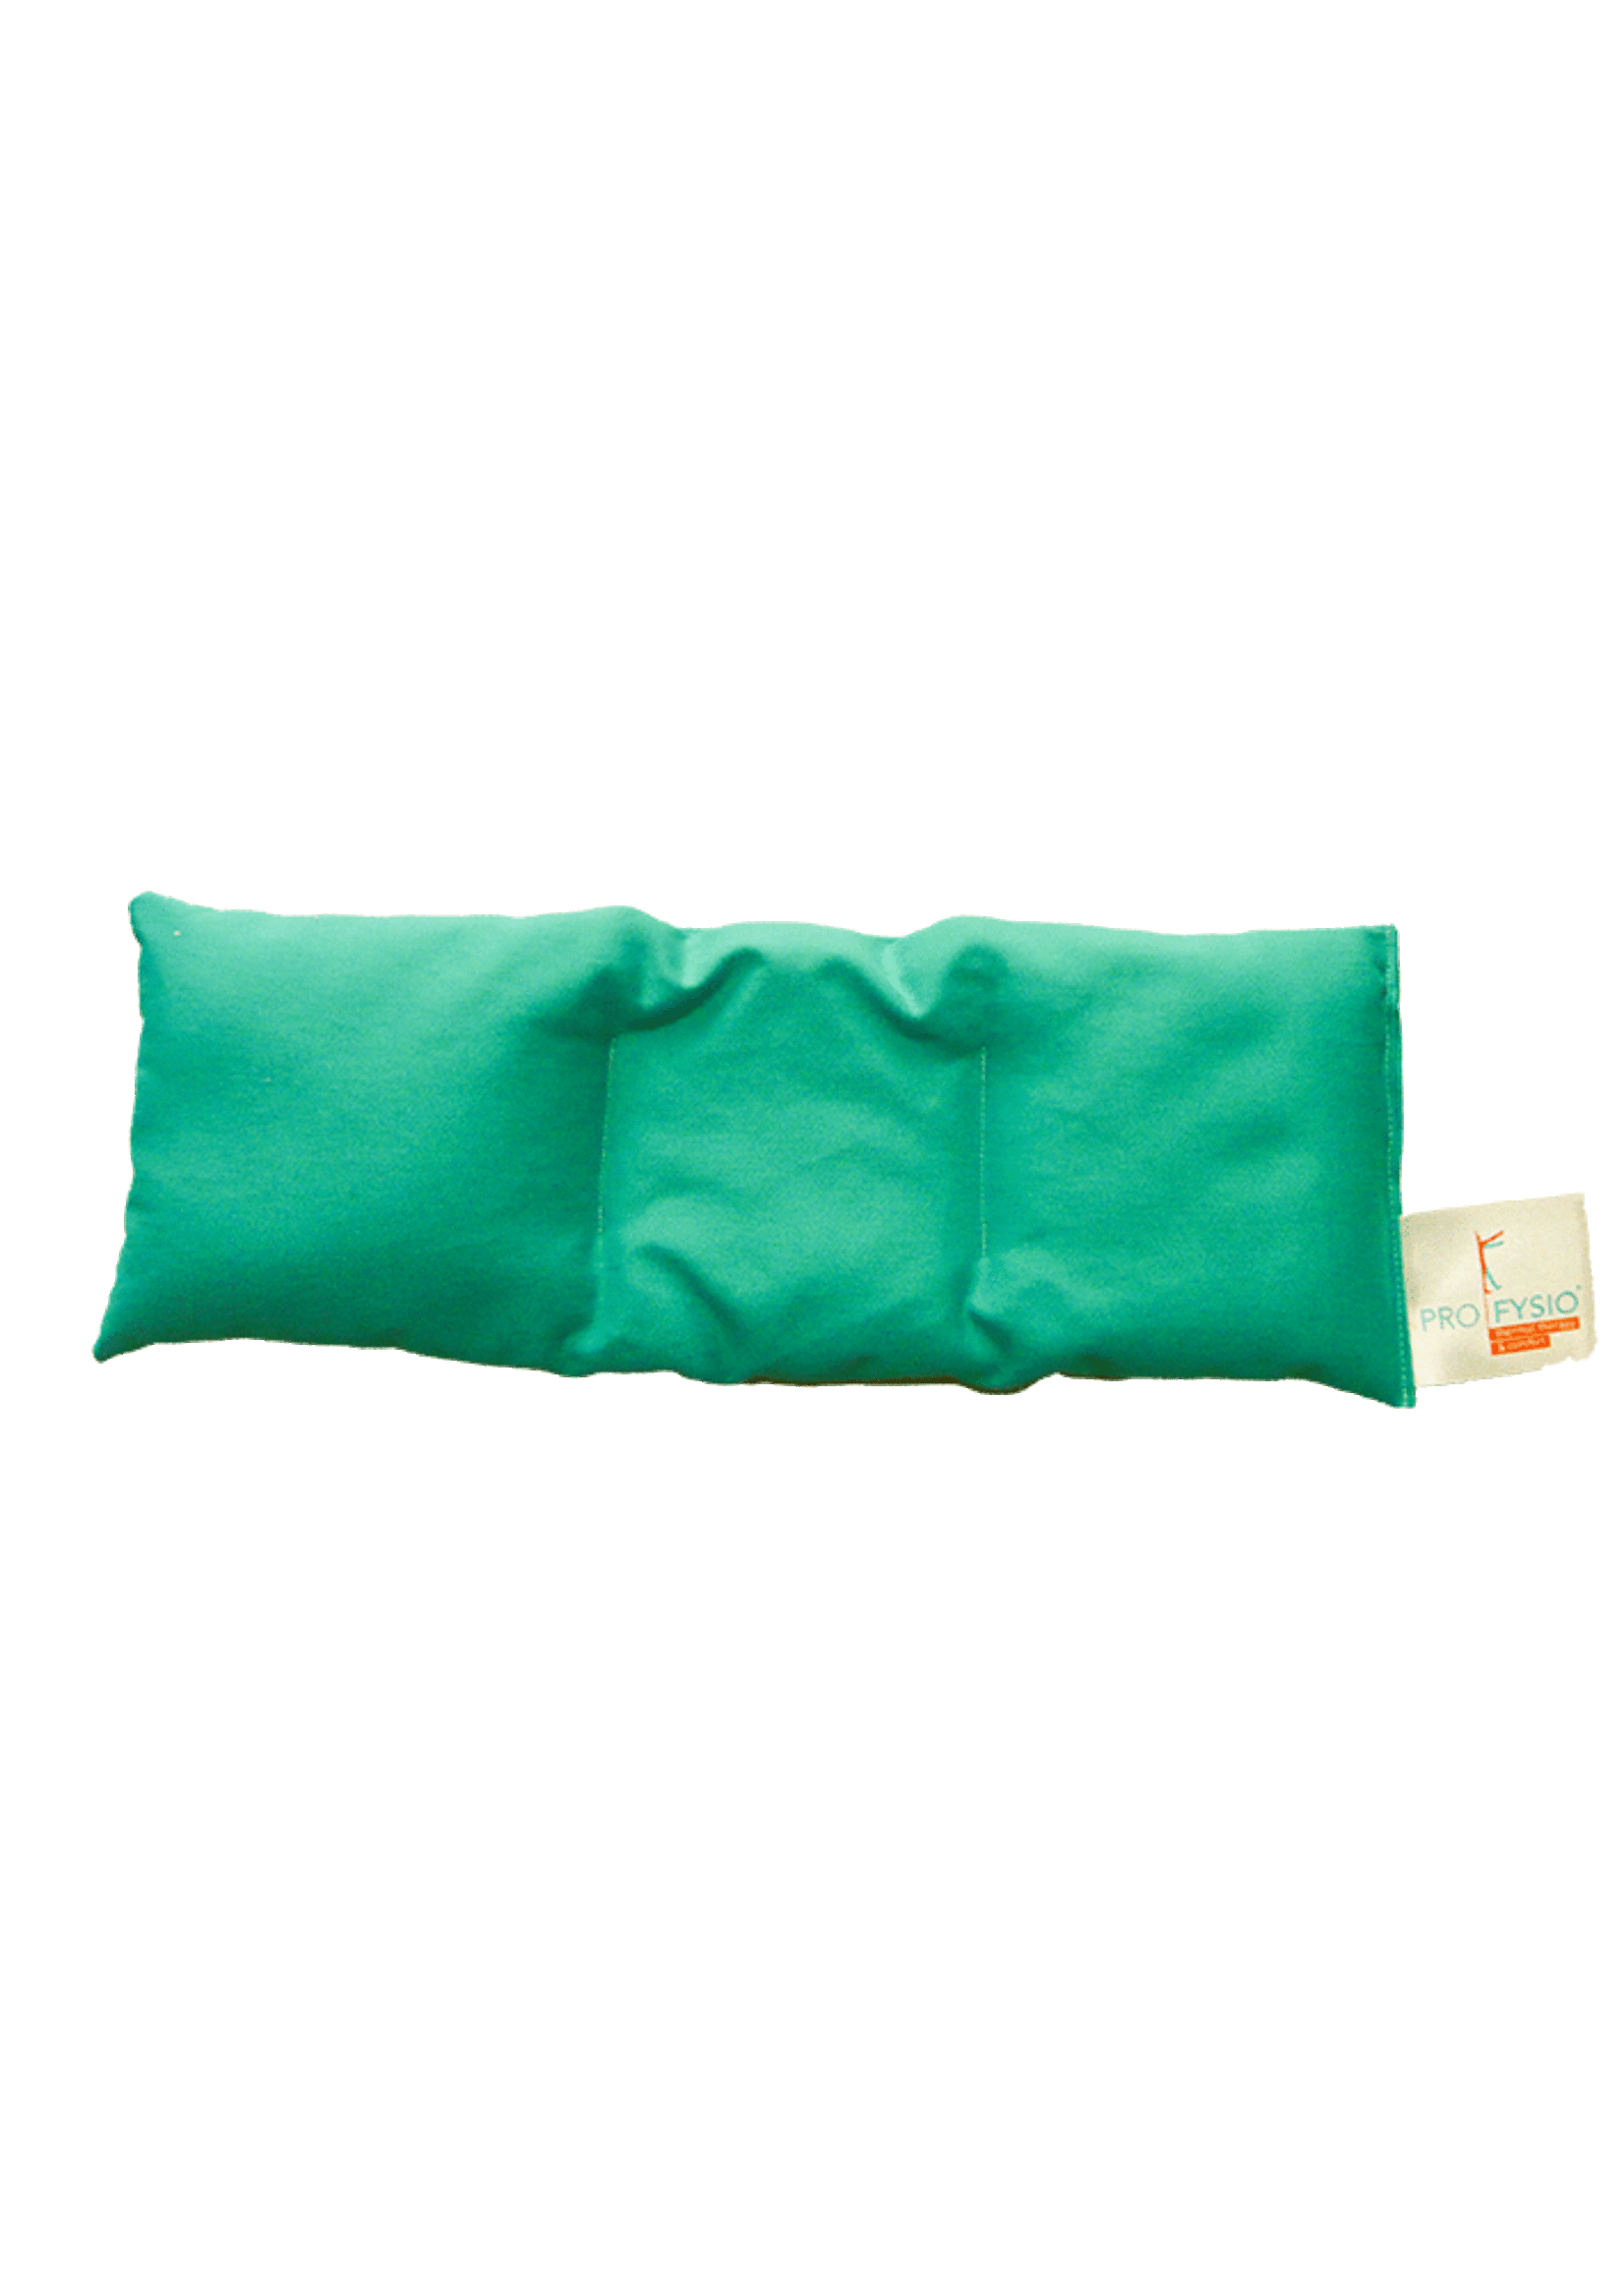 ProFysio ProFysio linseed cushion 12 x 30 cm